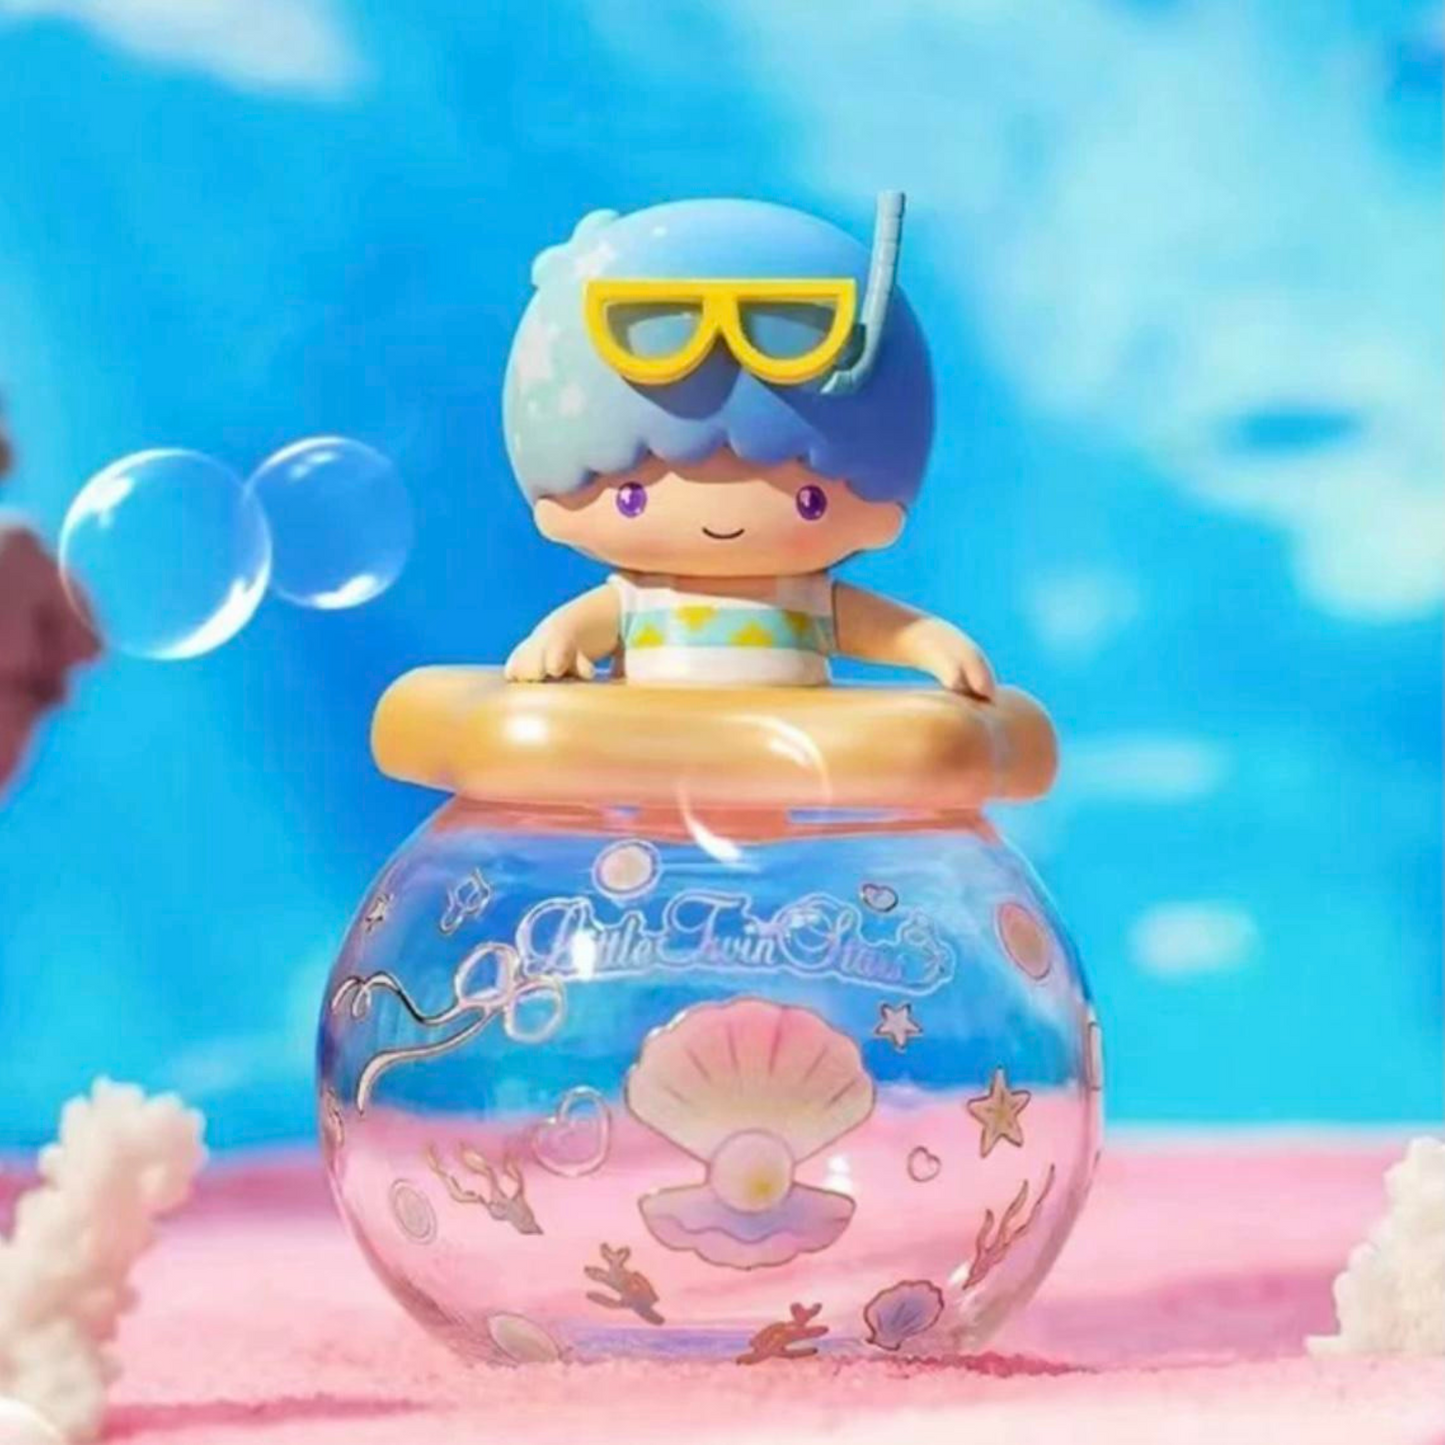 Top Toy Sanrio Characters Ocean Pearls Jar Series Blind Box Random Style